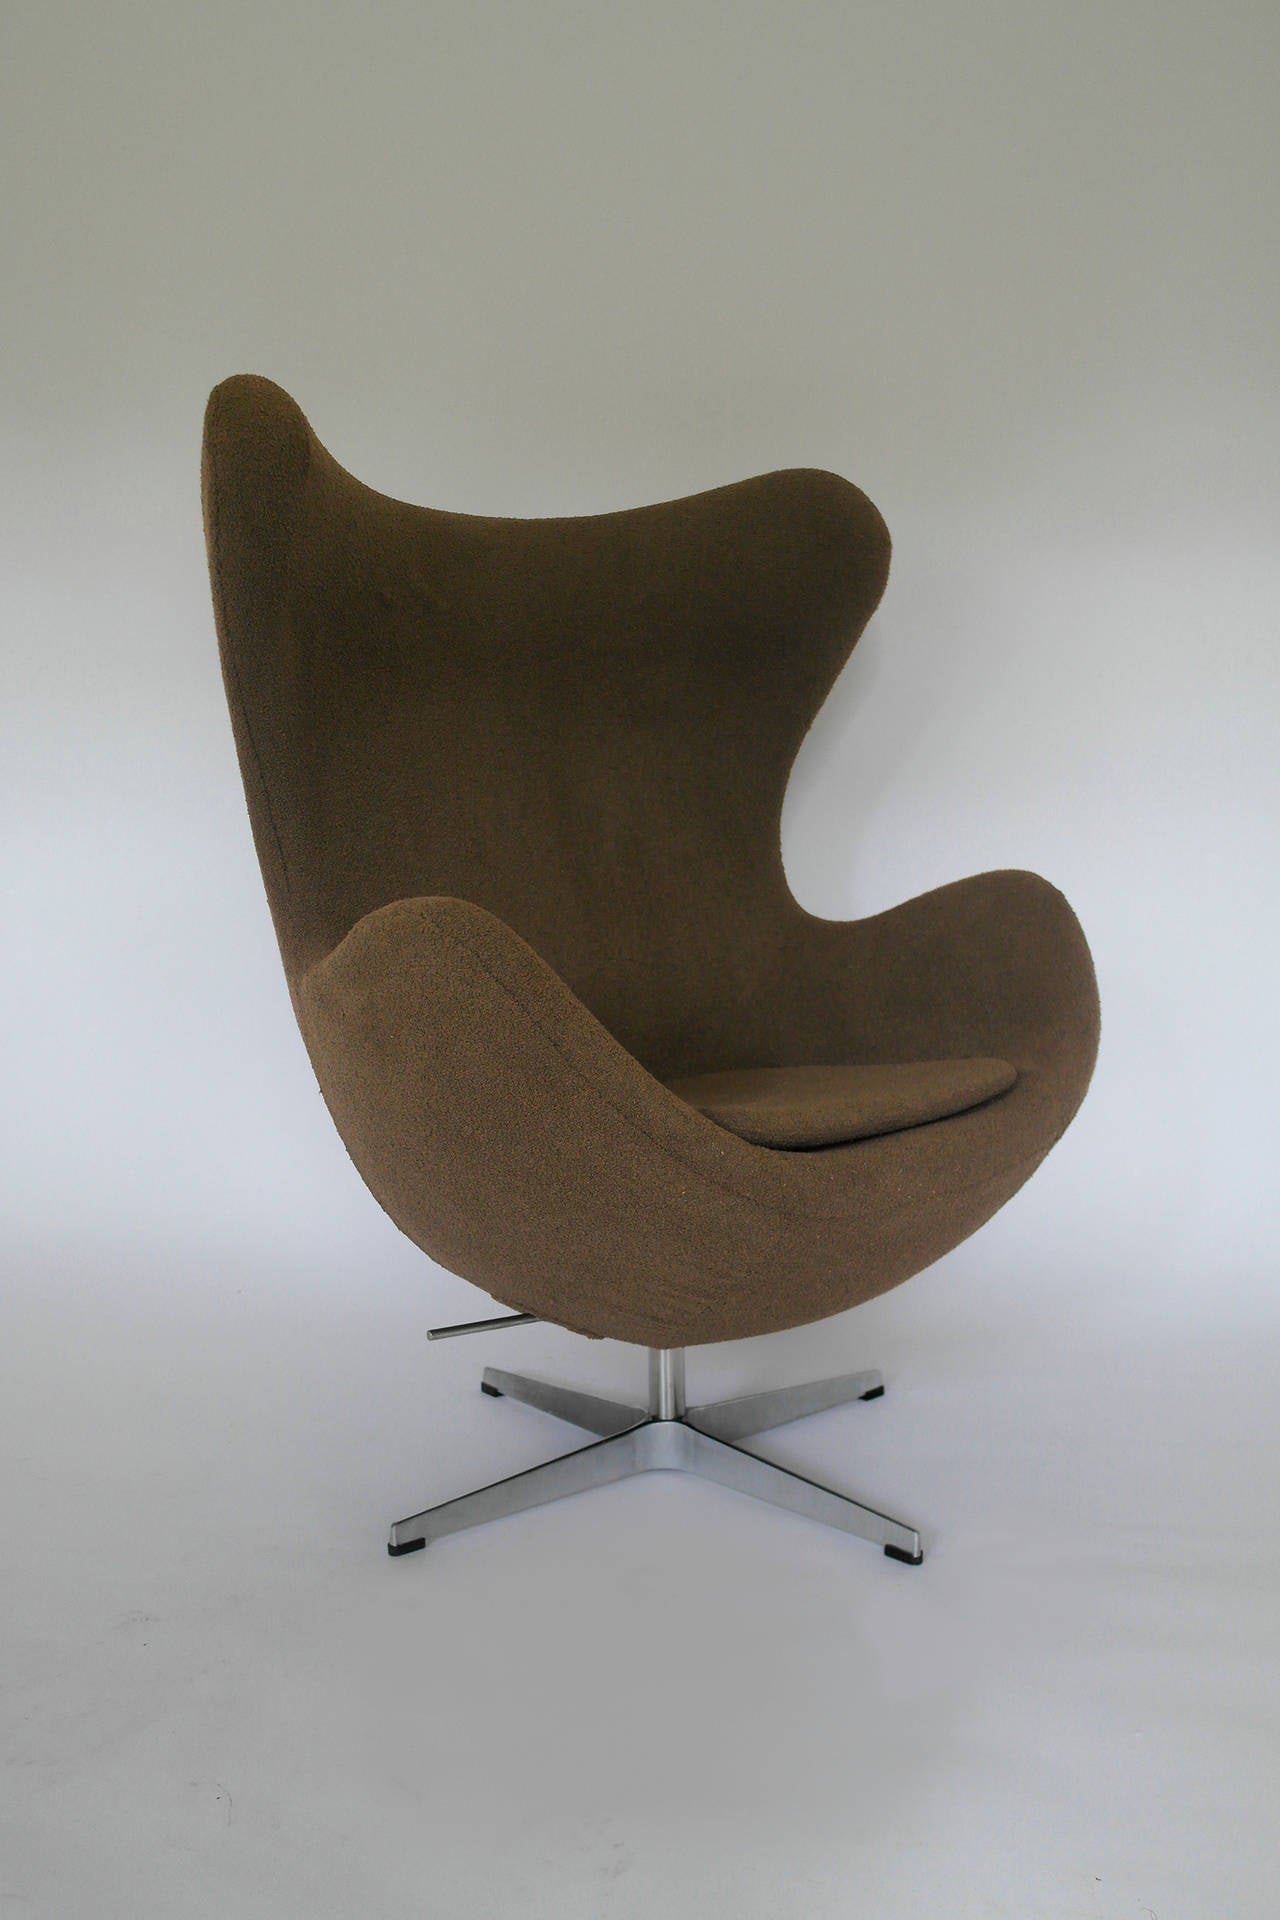 Danish Egg Chair by Arne Jacobsen, Fritz Hansen Style